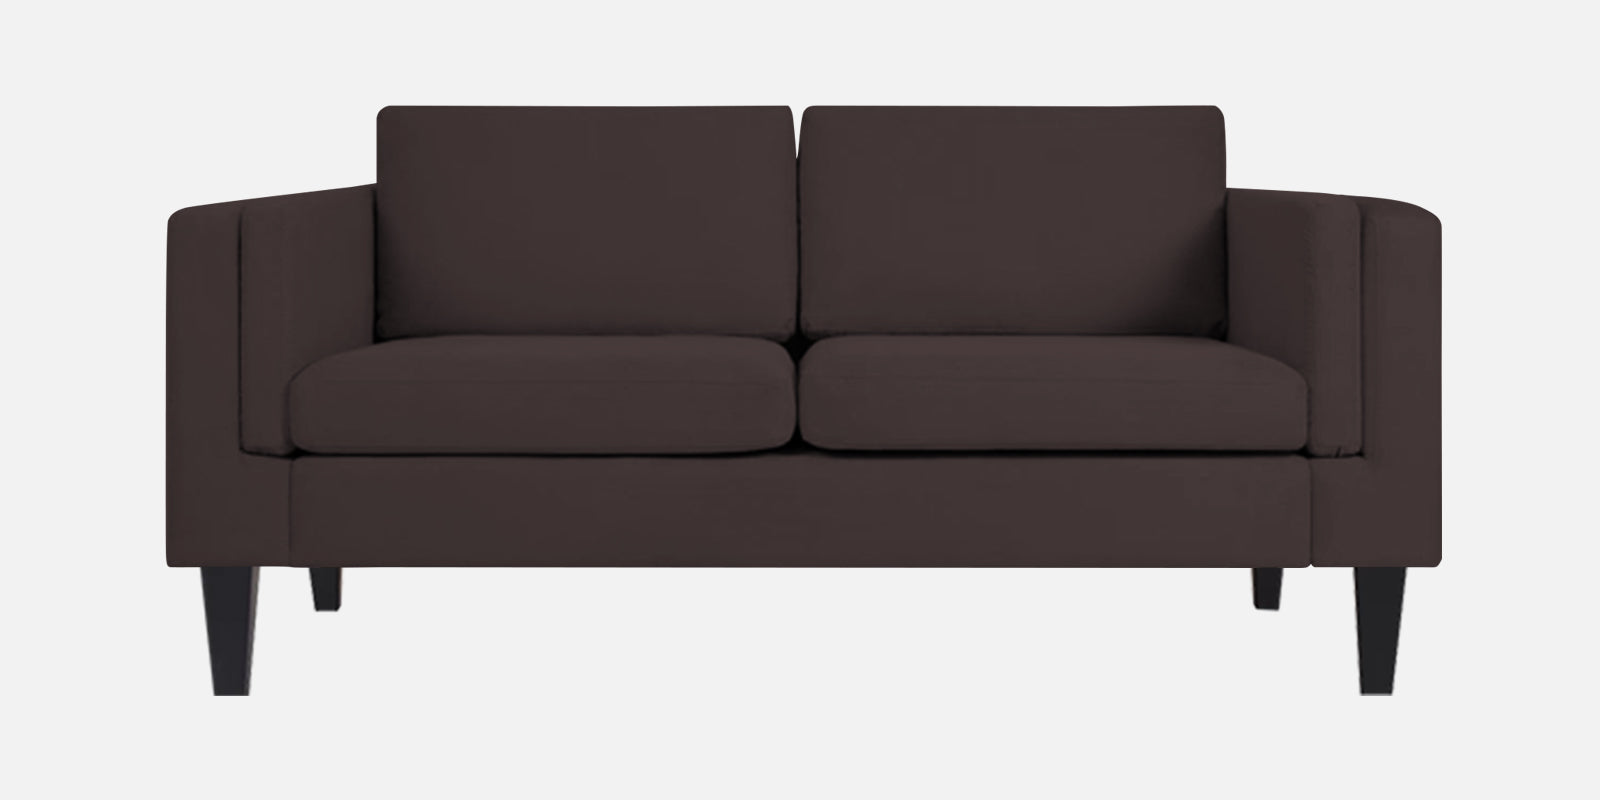 Jasper Velvet 2 Seater Sofa in Mocha Brown Colour